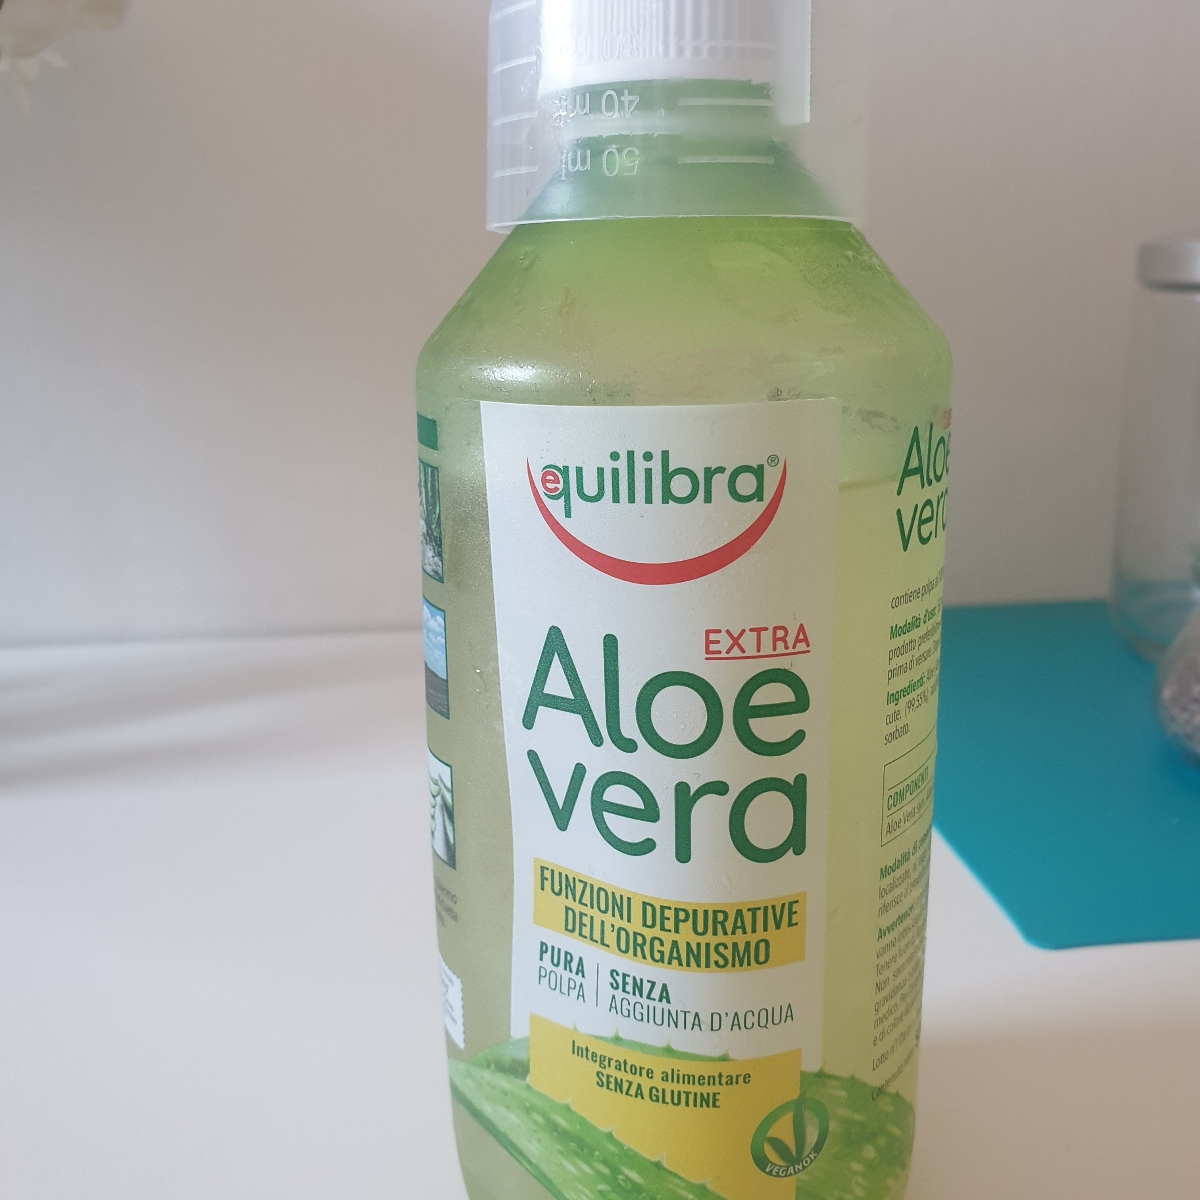 Equilibra Aloe Vera Extra Reviews | abillion